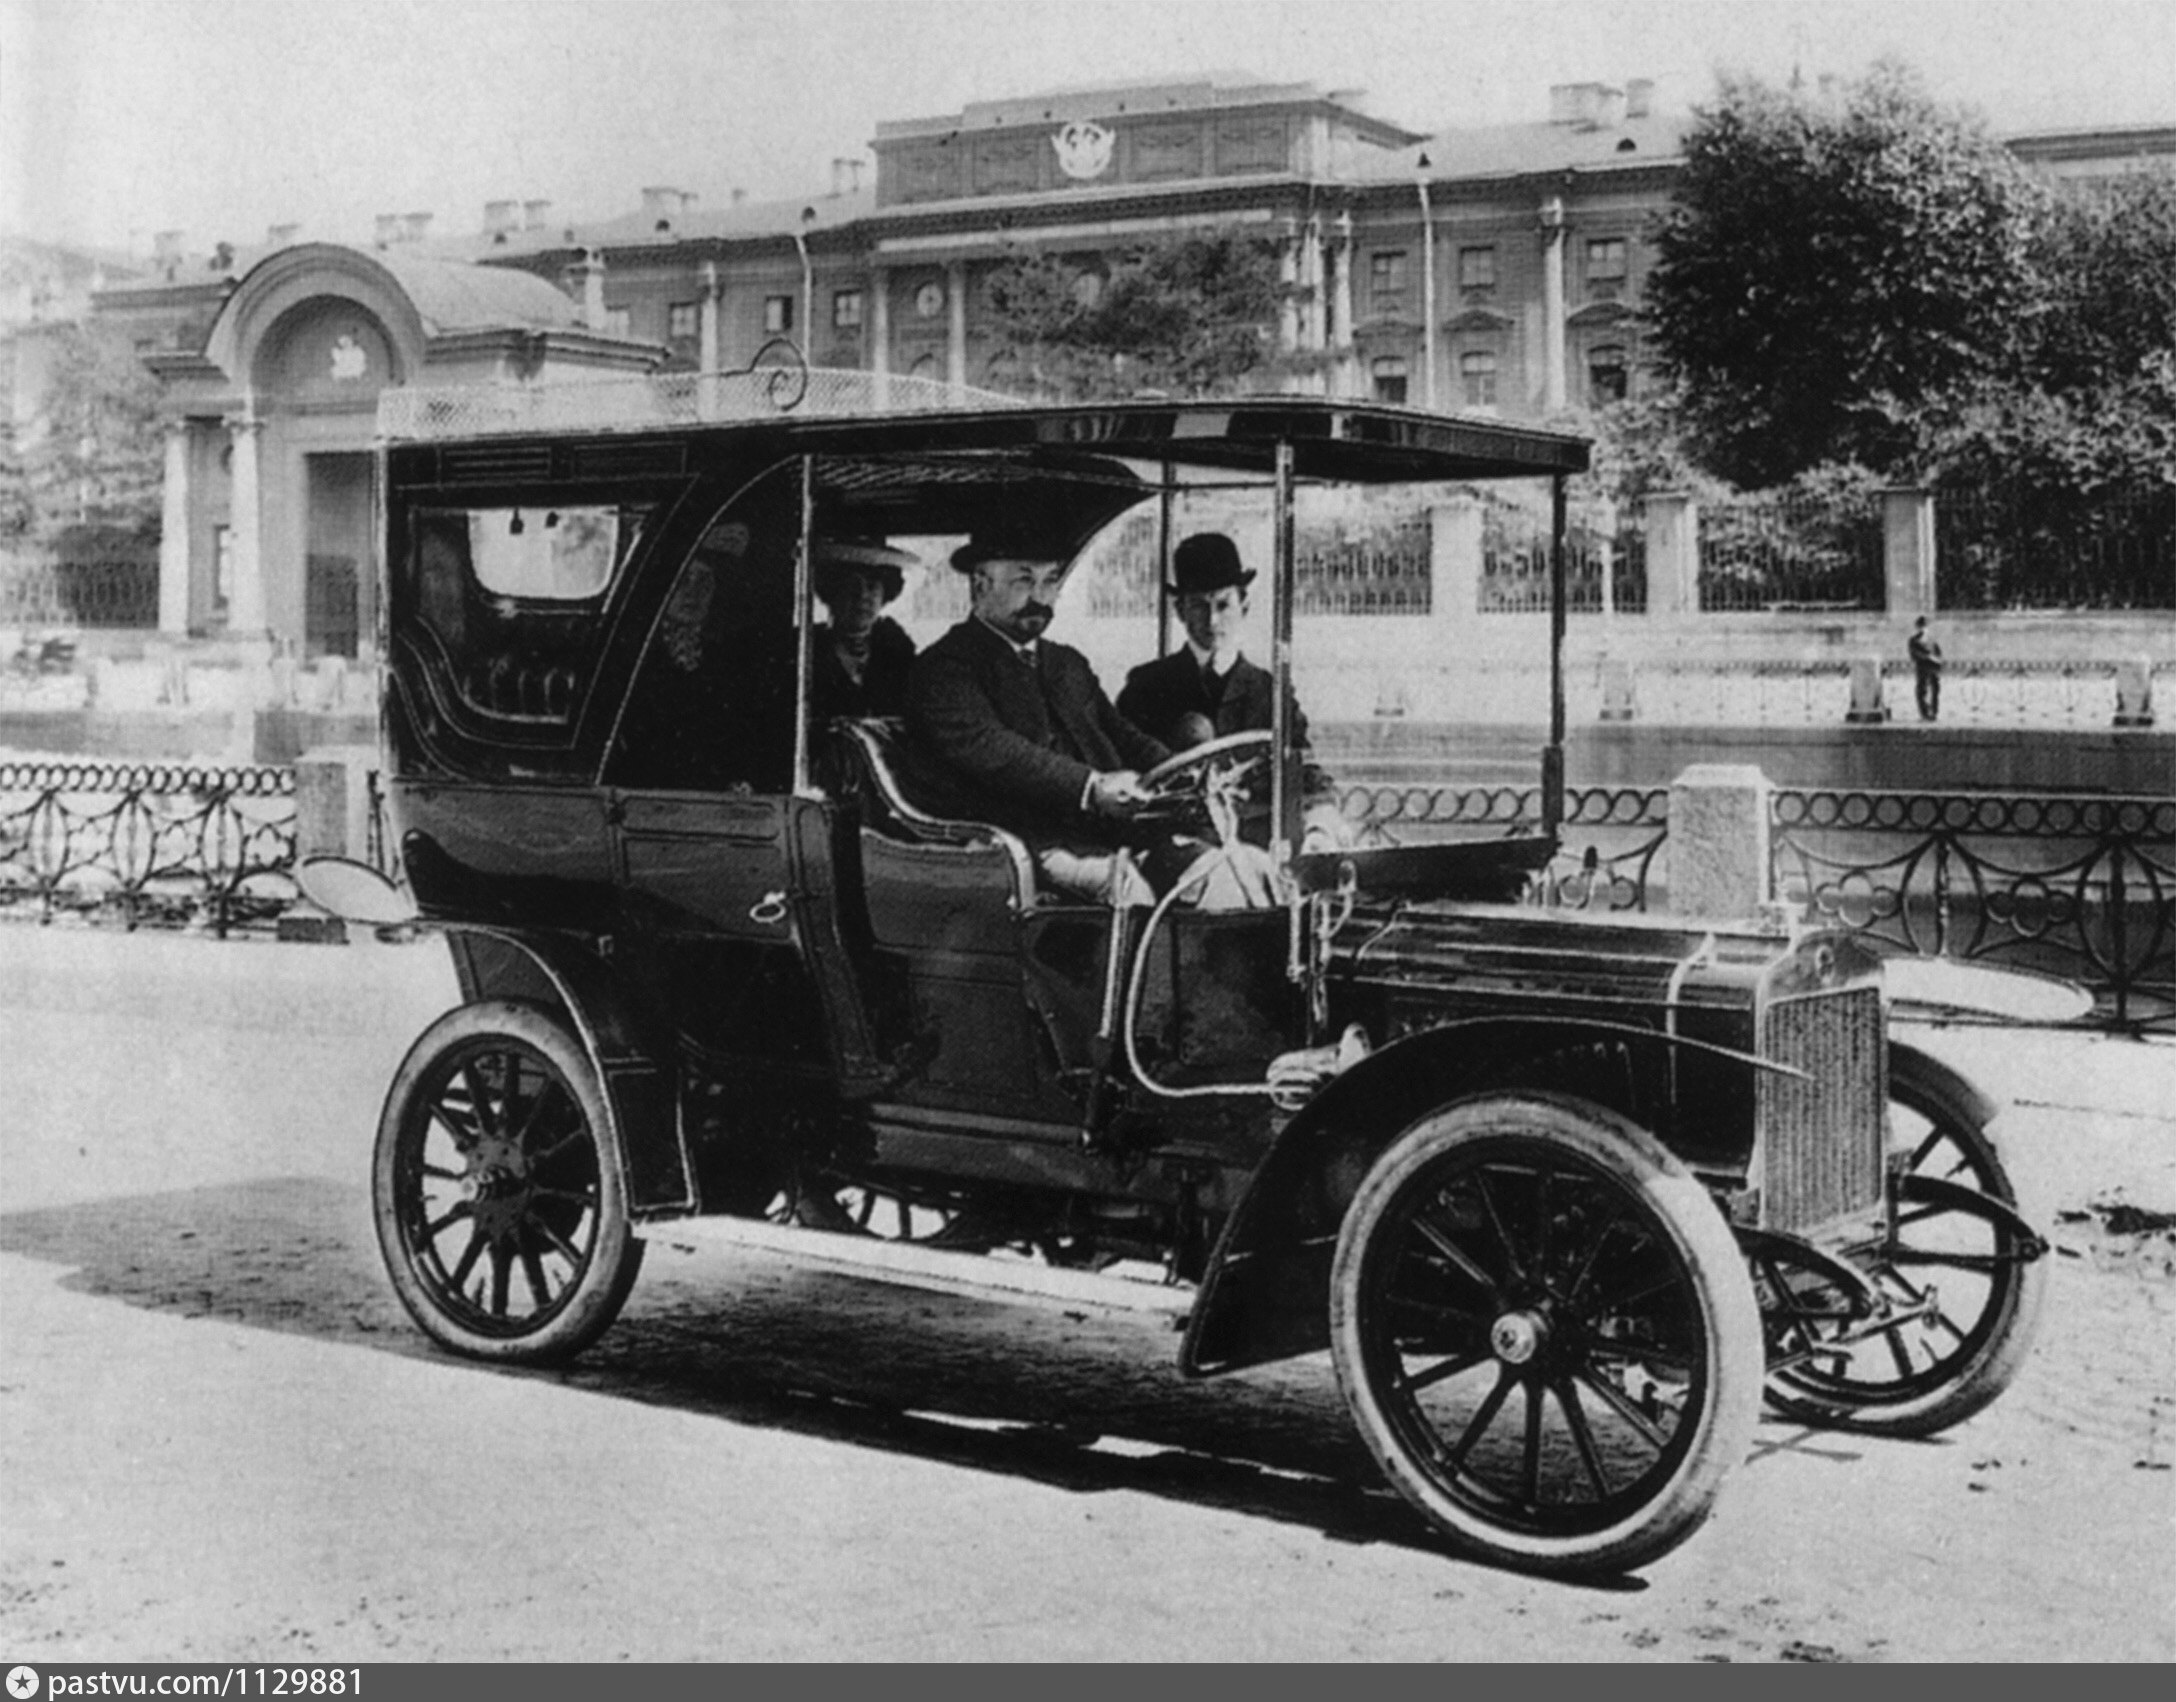 Автомобили 1896 года. Руссо-Балт 1910. Руссо-Балт 1909. Автомобиль Форд в 1910-1913. Петербург 1895 год первый автомобиль.